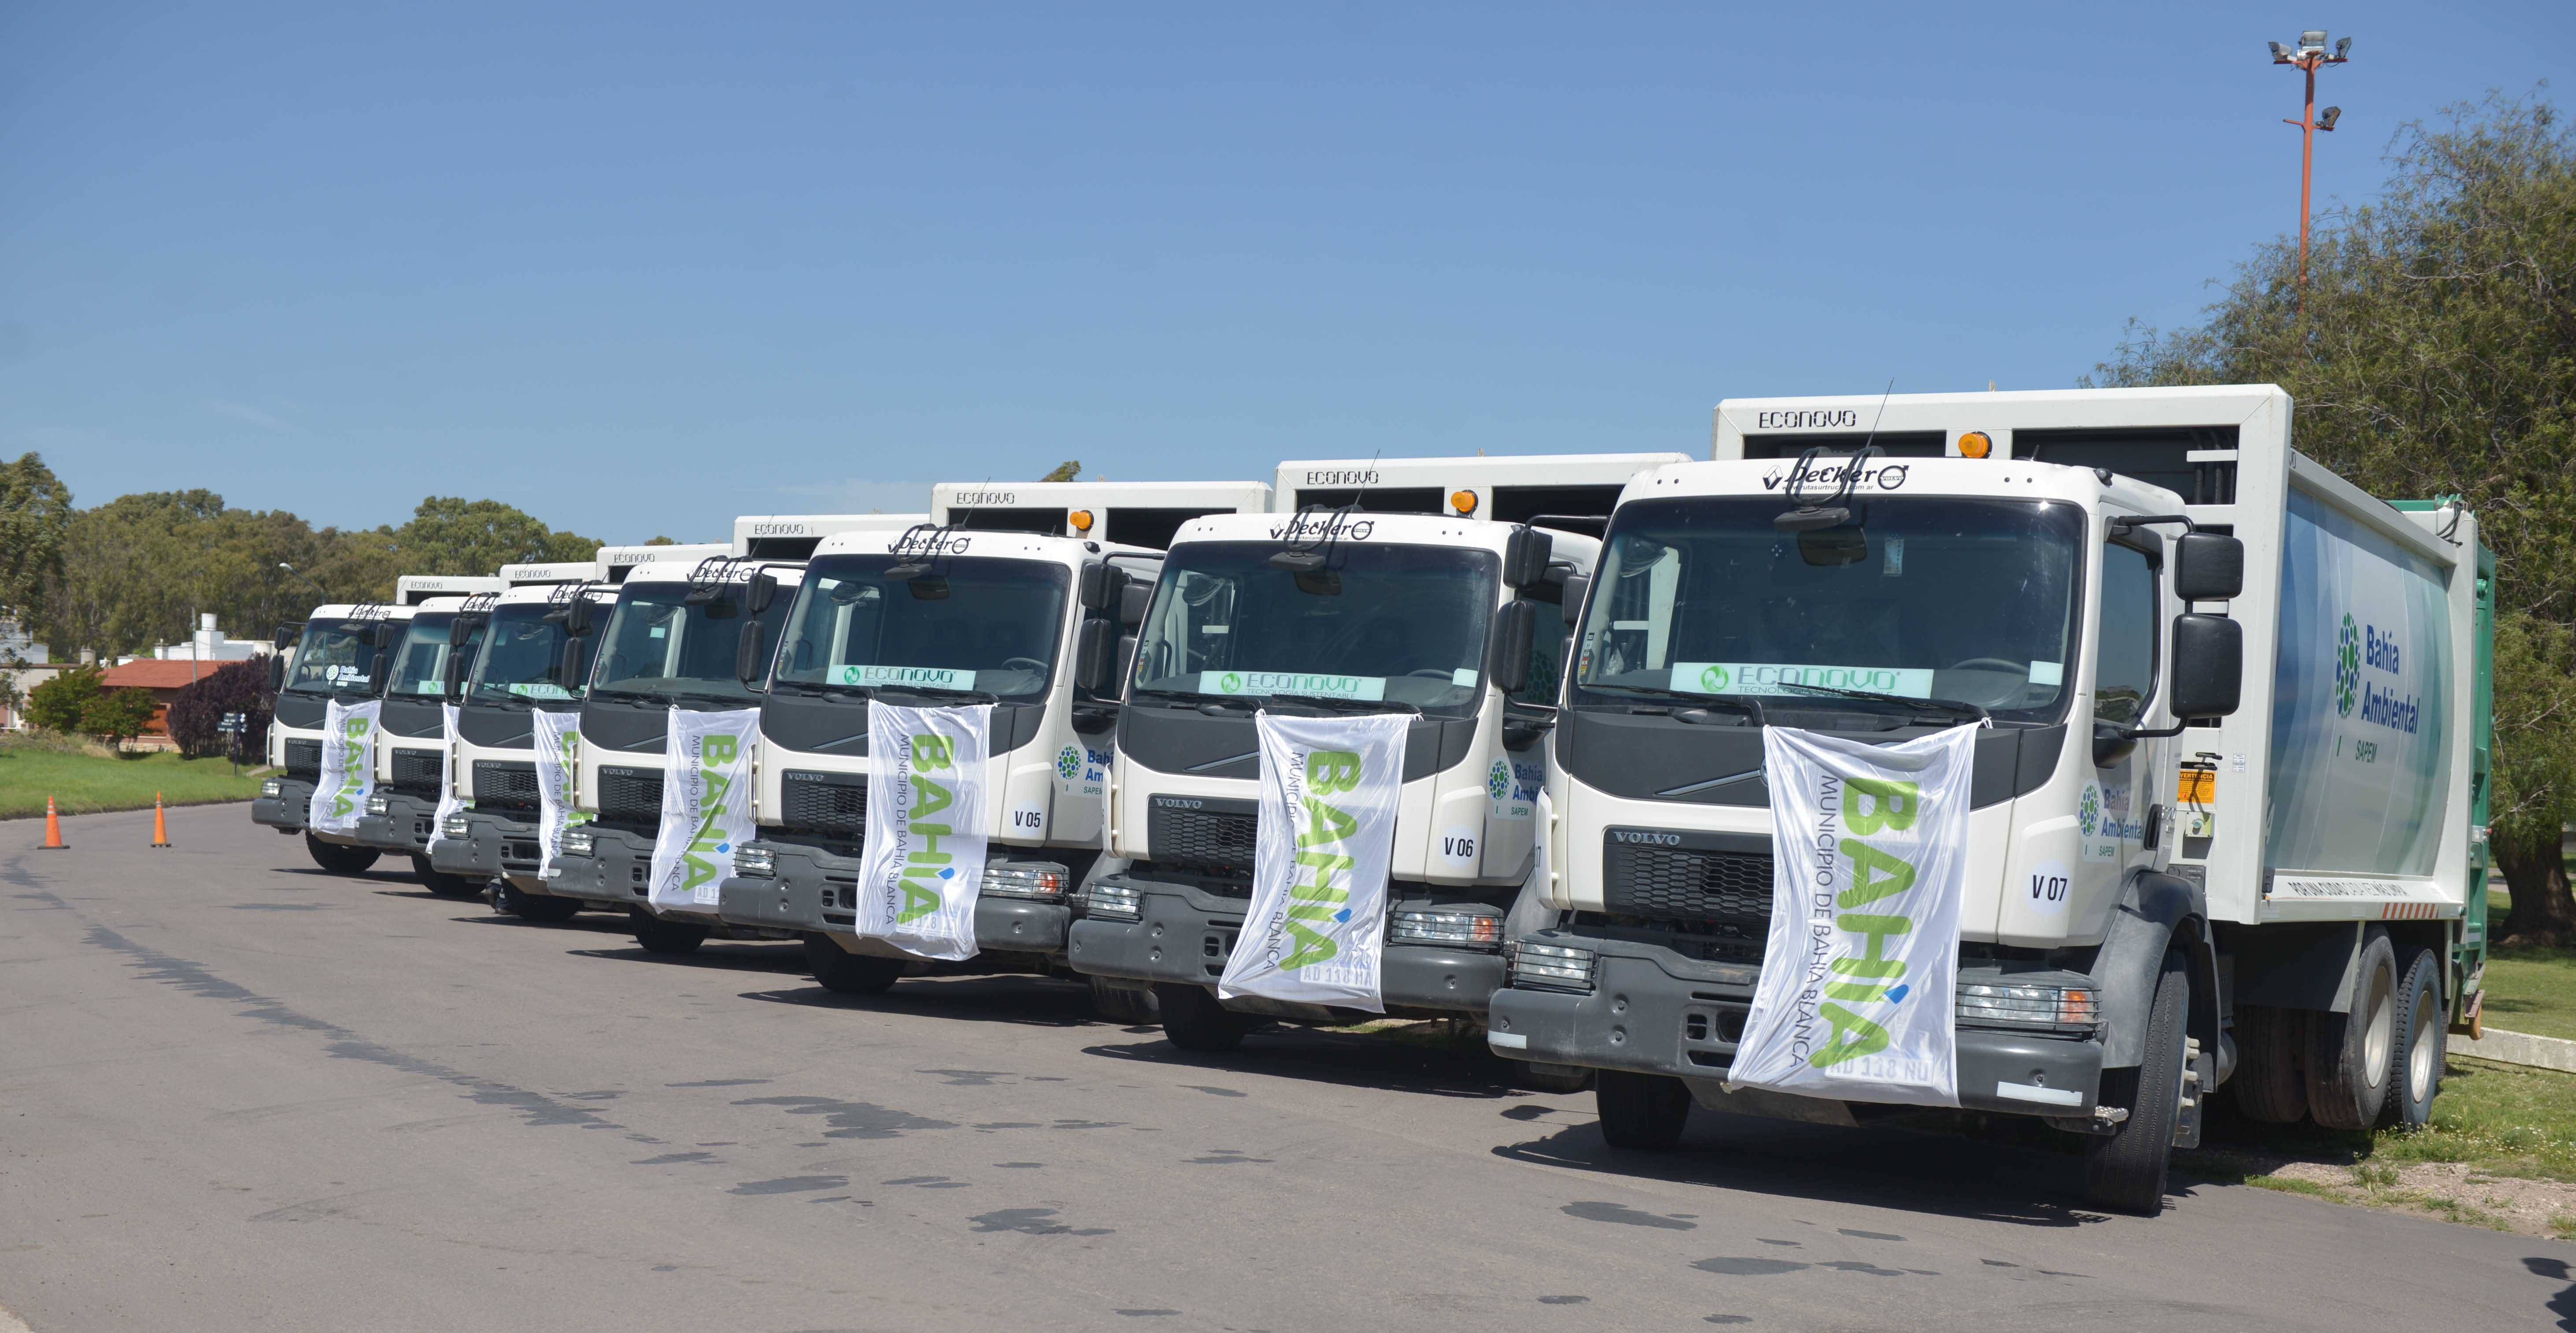 2018-11-16-bahia-blanca-elige-a-volvo-trucks-para-mejorar-la-eficiencia-en-la-recoleccion-de-residuos-2-02